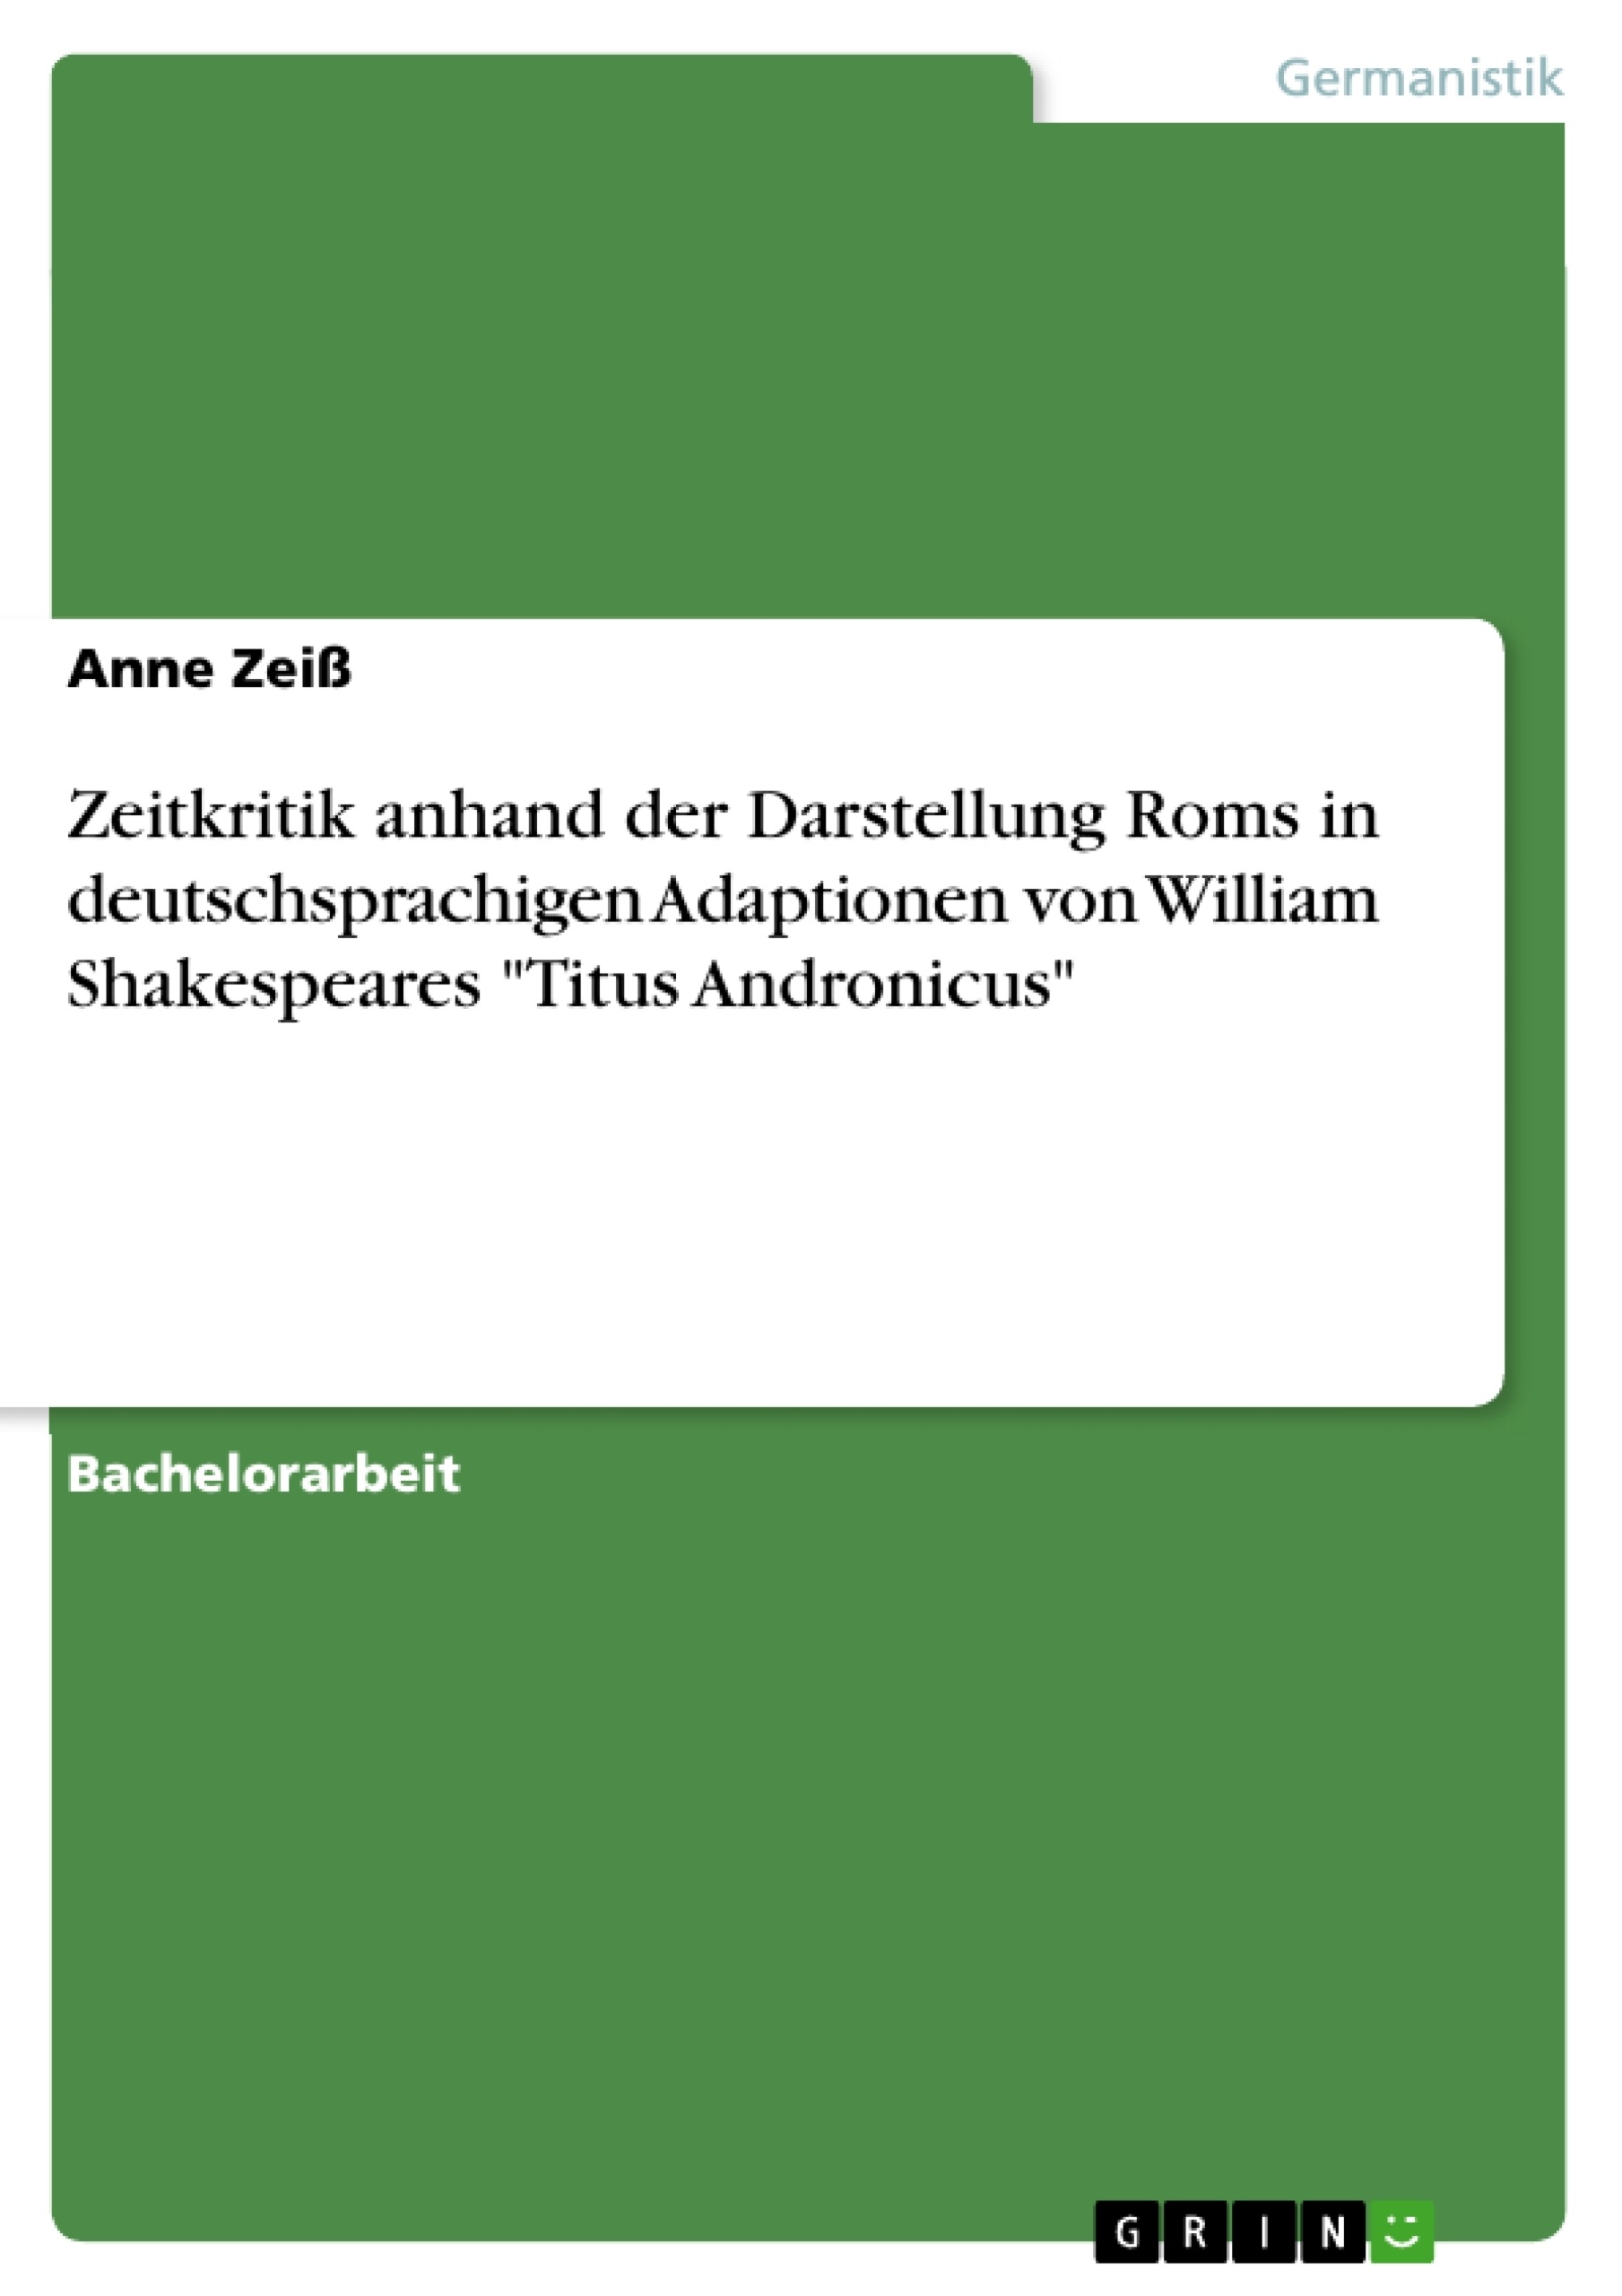 Titel: Zeitkritik anhand der Darstellung Roms in deutschsprachigen Adaptionen von William Shakespeares "Titus Andronicus"